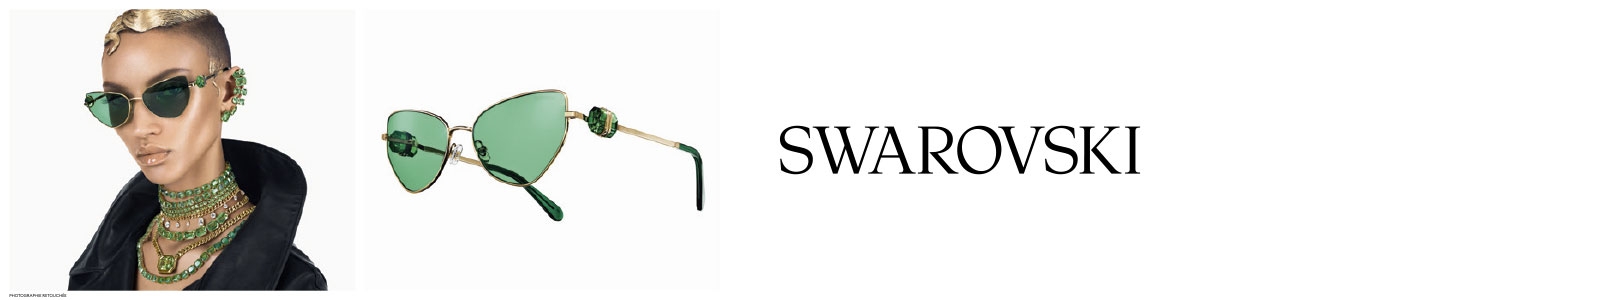 Modèle portant des lunettes Swarovski